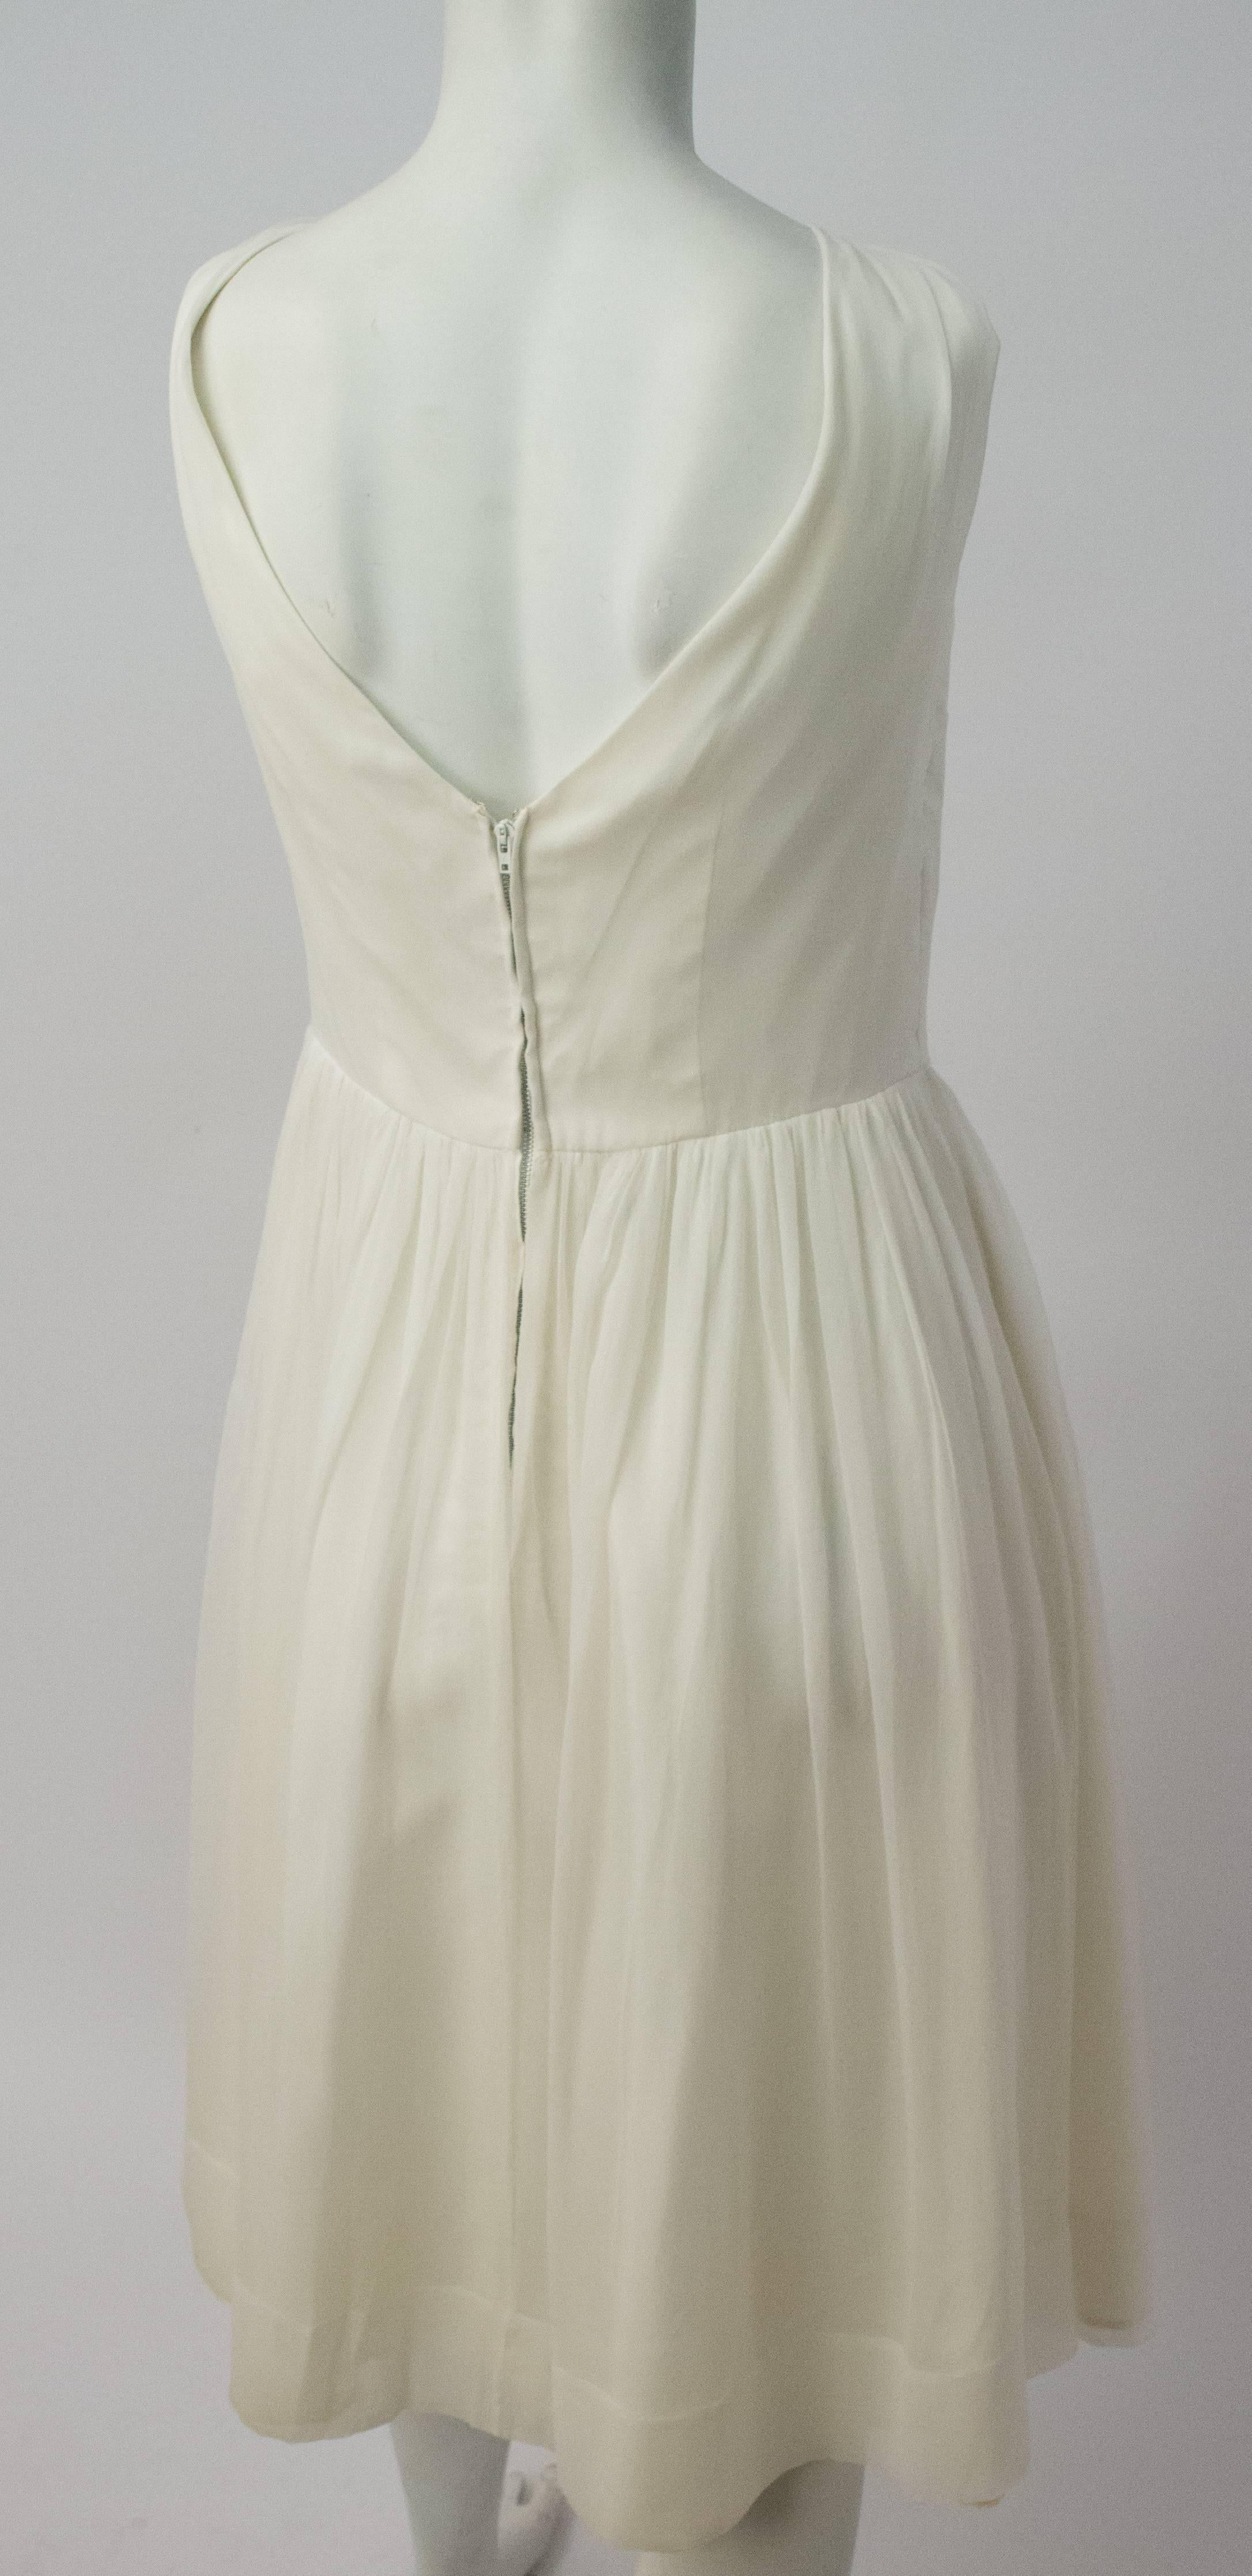 robe de soirée des années 50 en mousseline et satin blancs. Entièrement doublé. Fermeture éclair arrière en métal. Quelques décolorations sur la doublure, non visibles de l'extérieur.